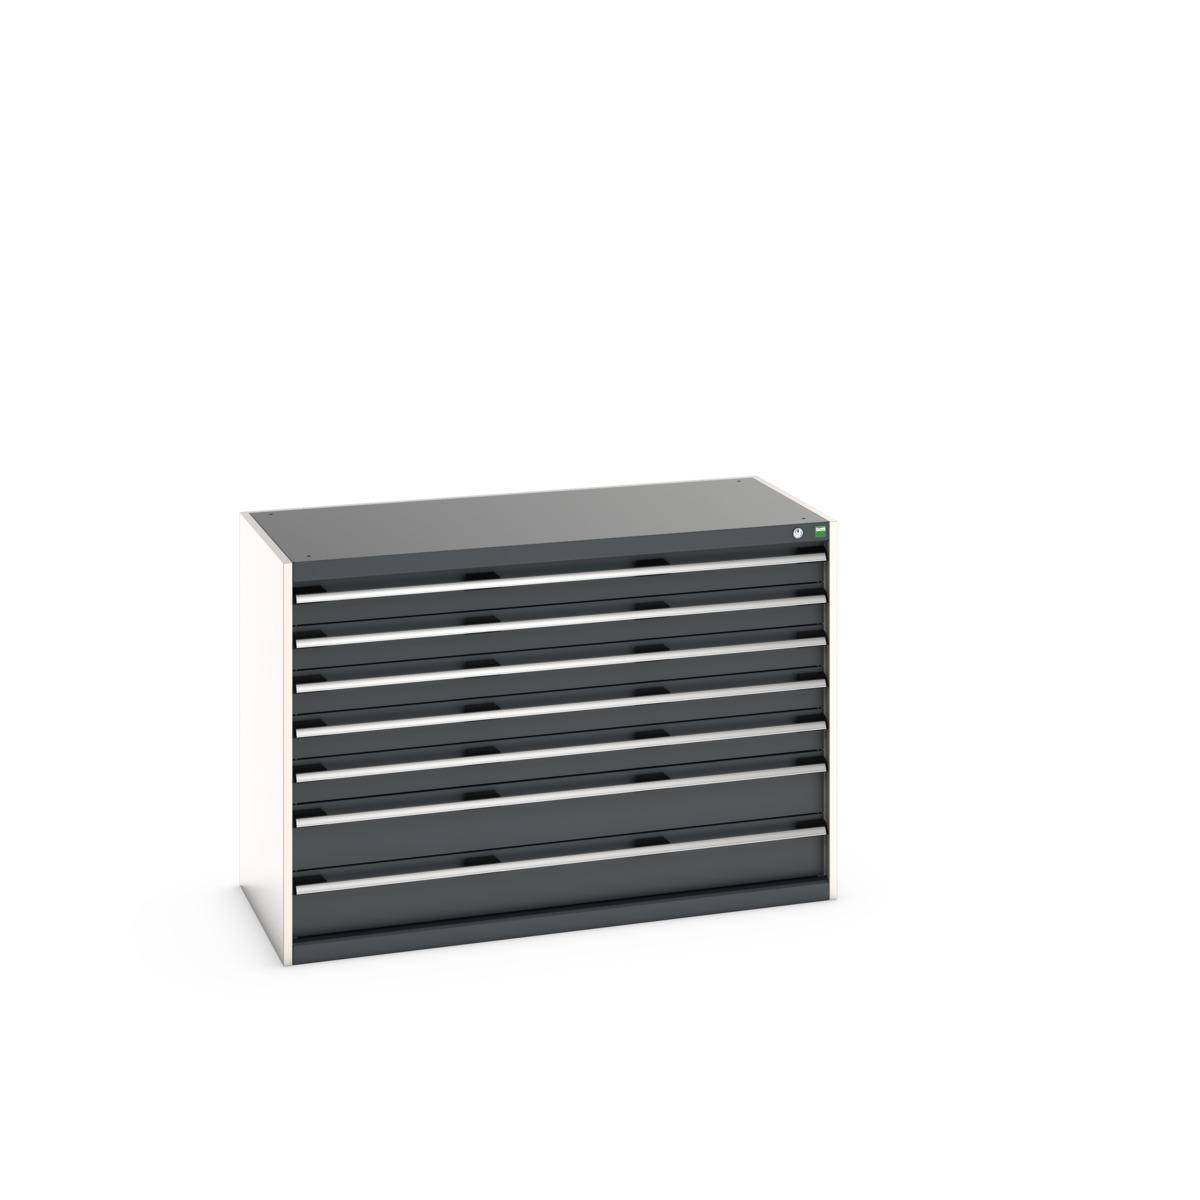 40022117.19V - cubio drawer cabinet